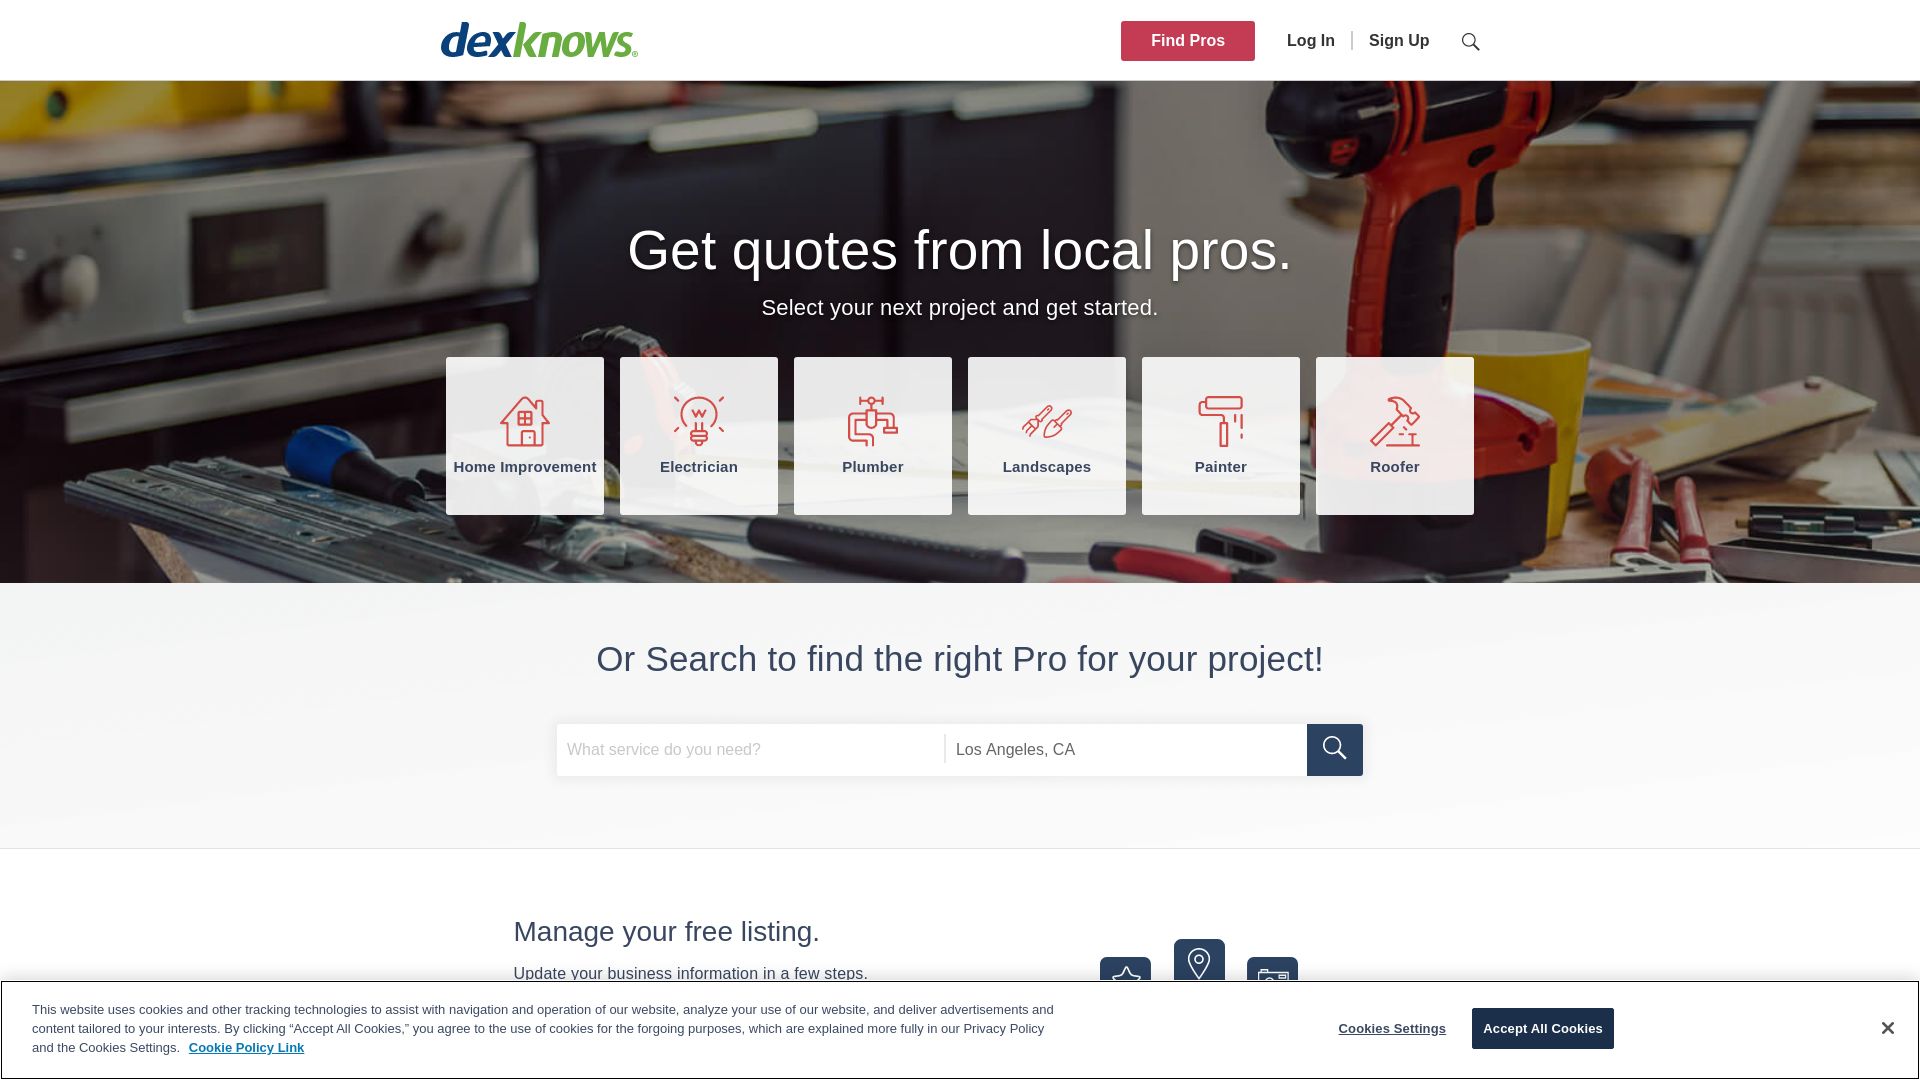 Website status dexknows.com is   ONLINE